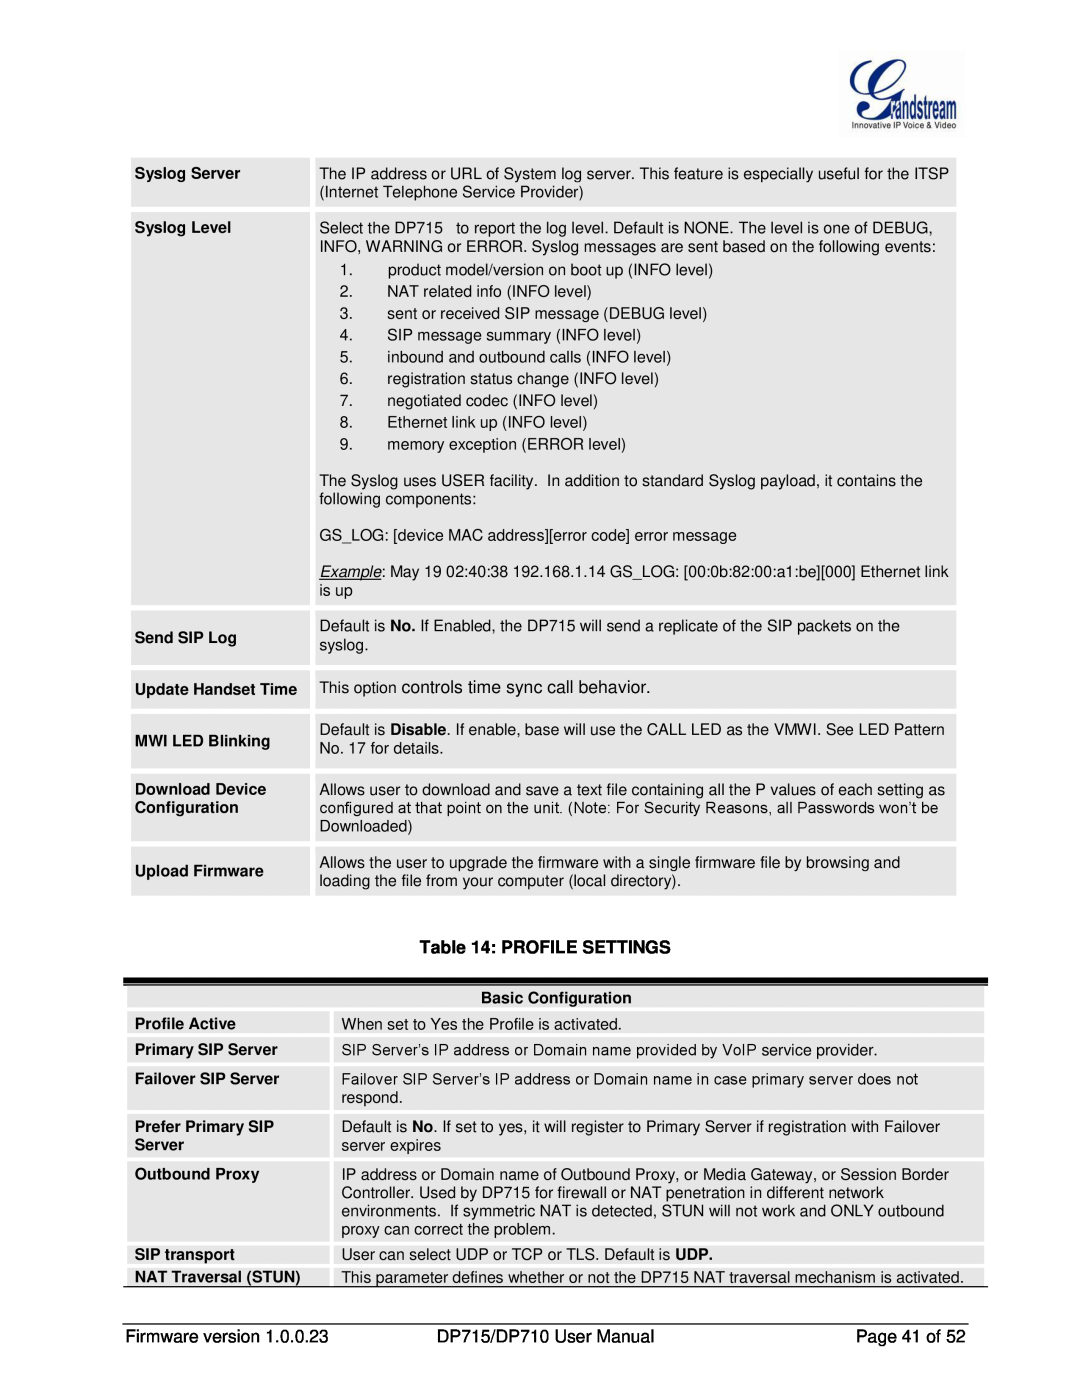 Grandstream Networks DP710 manual Profile Settings 